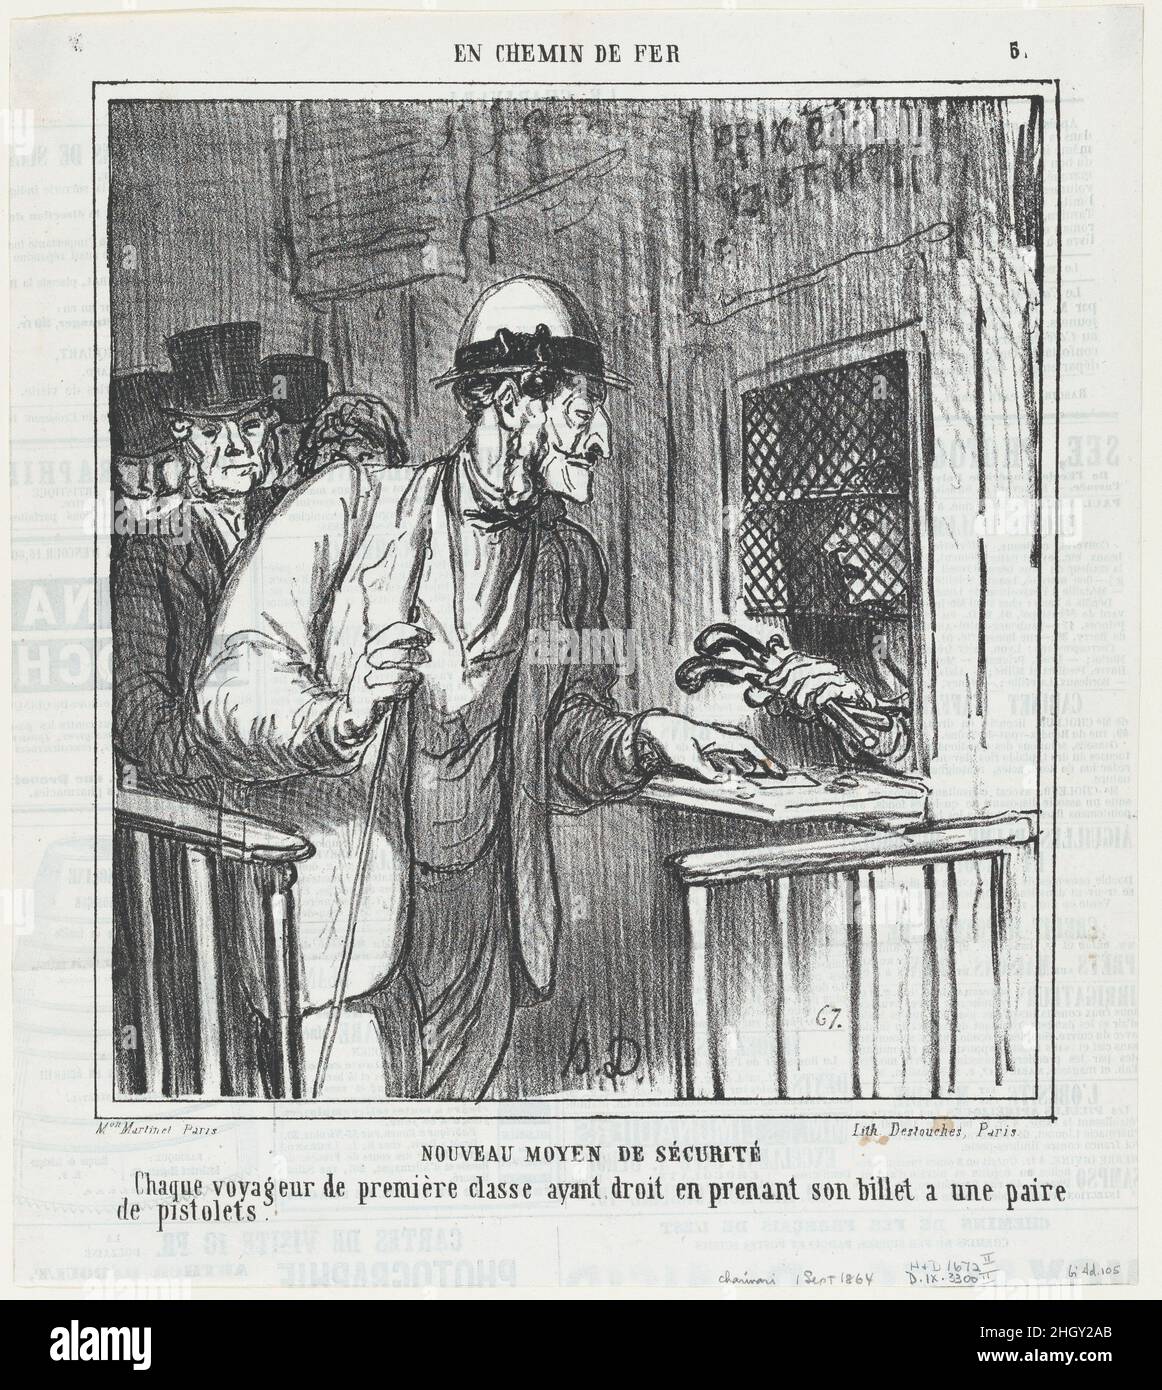 Nuevas medidas de seguridad, de 'en el tren', publicado en Le Charivari, 1 de septiembre de 1864 1 de septiembre de 1864 Honoré Daumier NUEVAS MEDIDAS DE SEGURIDAD. Cada viajero de primera clase, al comprar un billete, tiene derecho a traer dos pistolas. Nuevas medidas de seguridad, de 'En el tren', publicado en Le Charivari, 1 de septiembre de 1864. 'En el tren' (en chemin de fer). Honoré Daumier (francés, Marsella, 1808–1879 Valmondois). 1 de septiembre de 1864. Litografía sobre papel prensa; segundo estado de dos (Delteil). Aaron Martinet (francés, 1762–1841). Impresiones Foto de stock